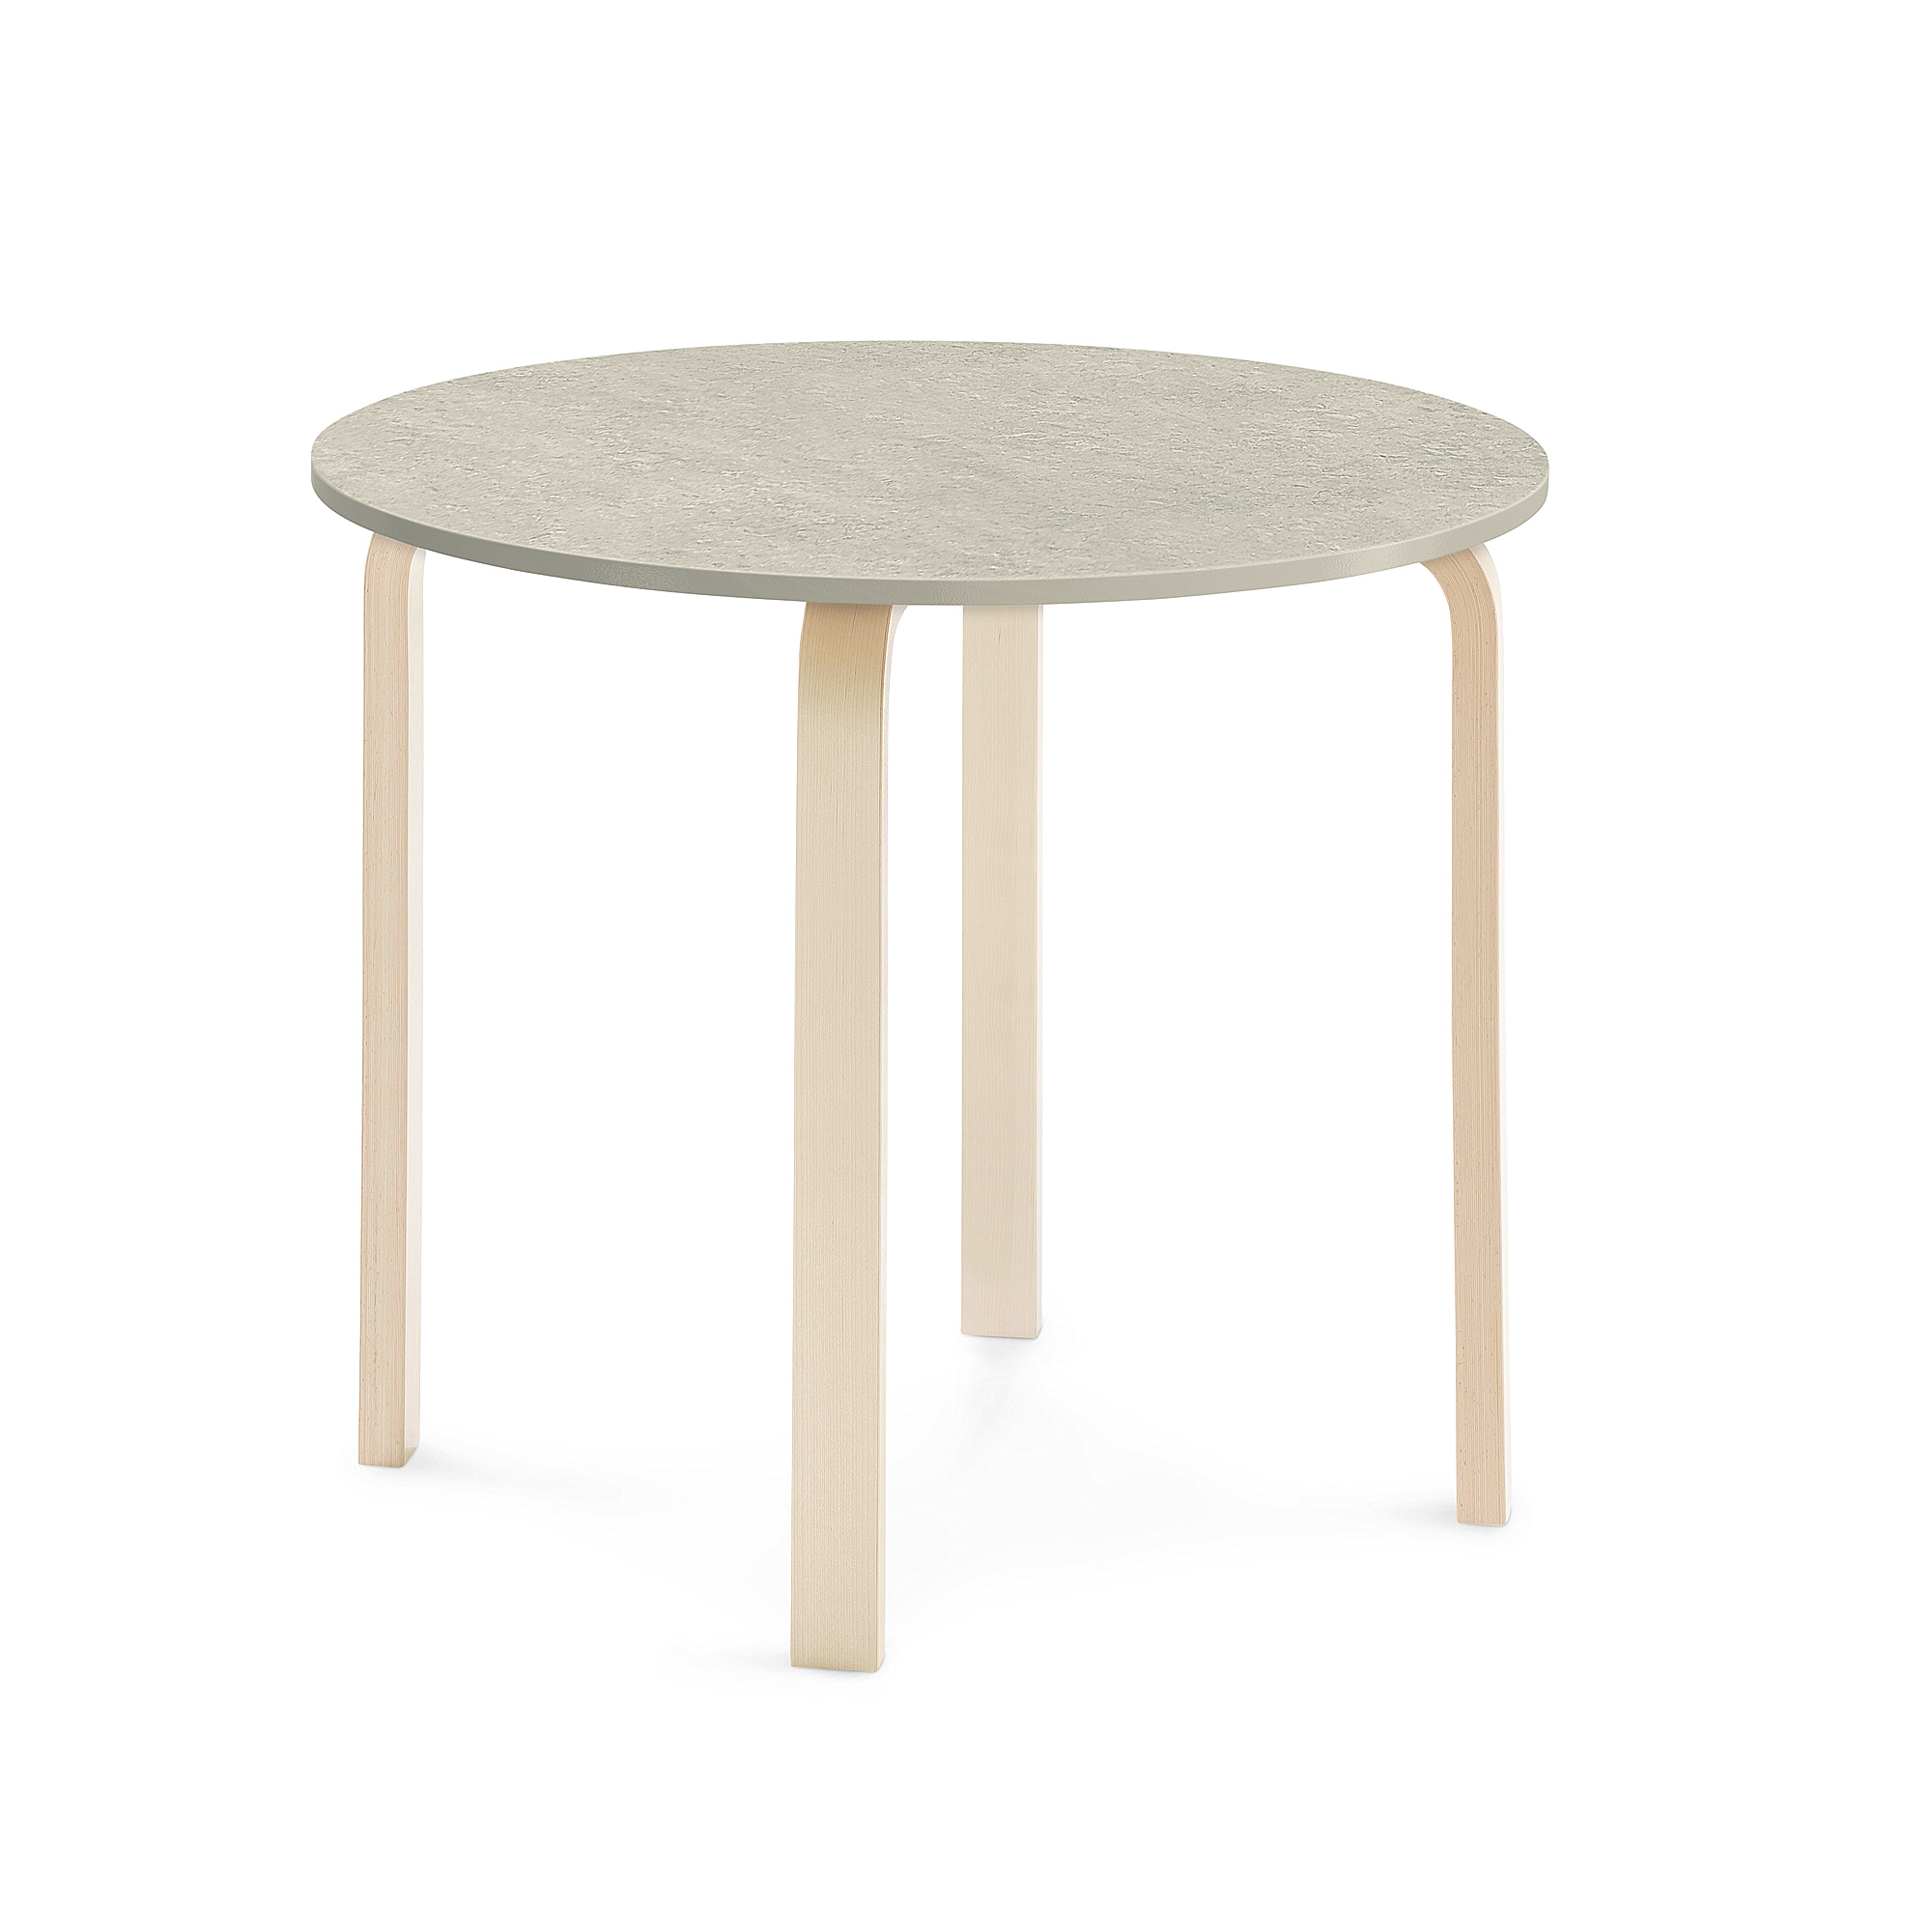 Stůl ELTON, Ø 900x710 mm, bříza, akustické linoleum, šedá